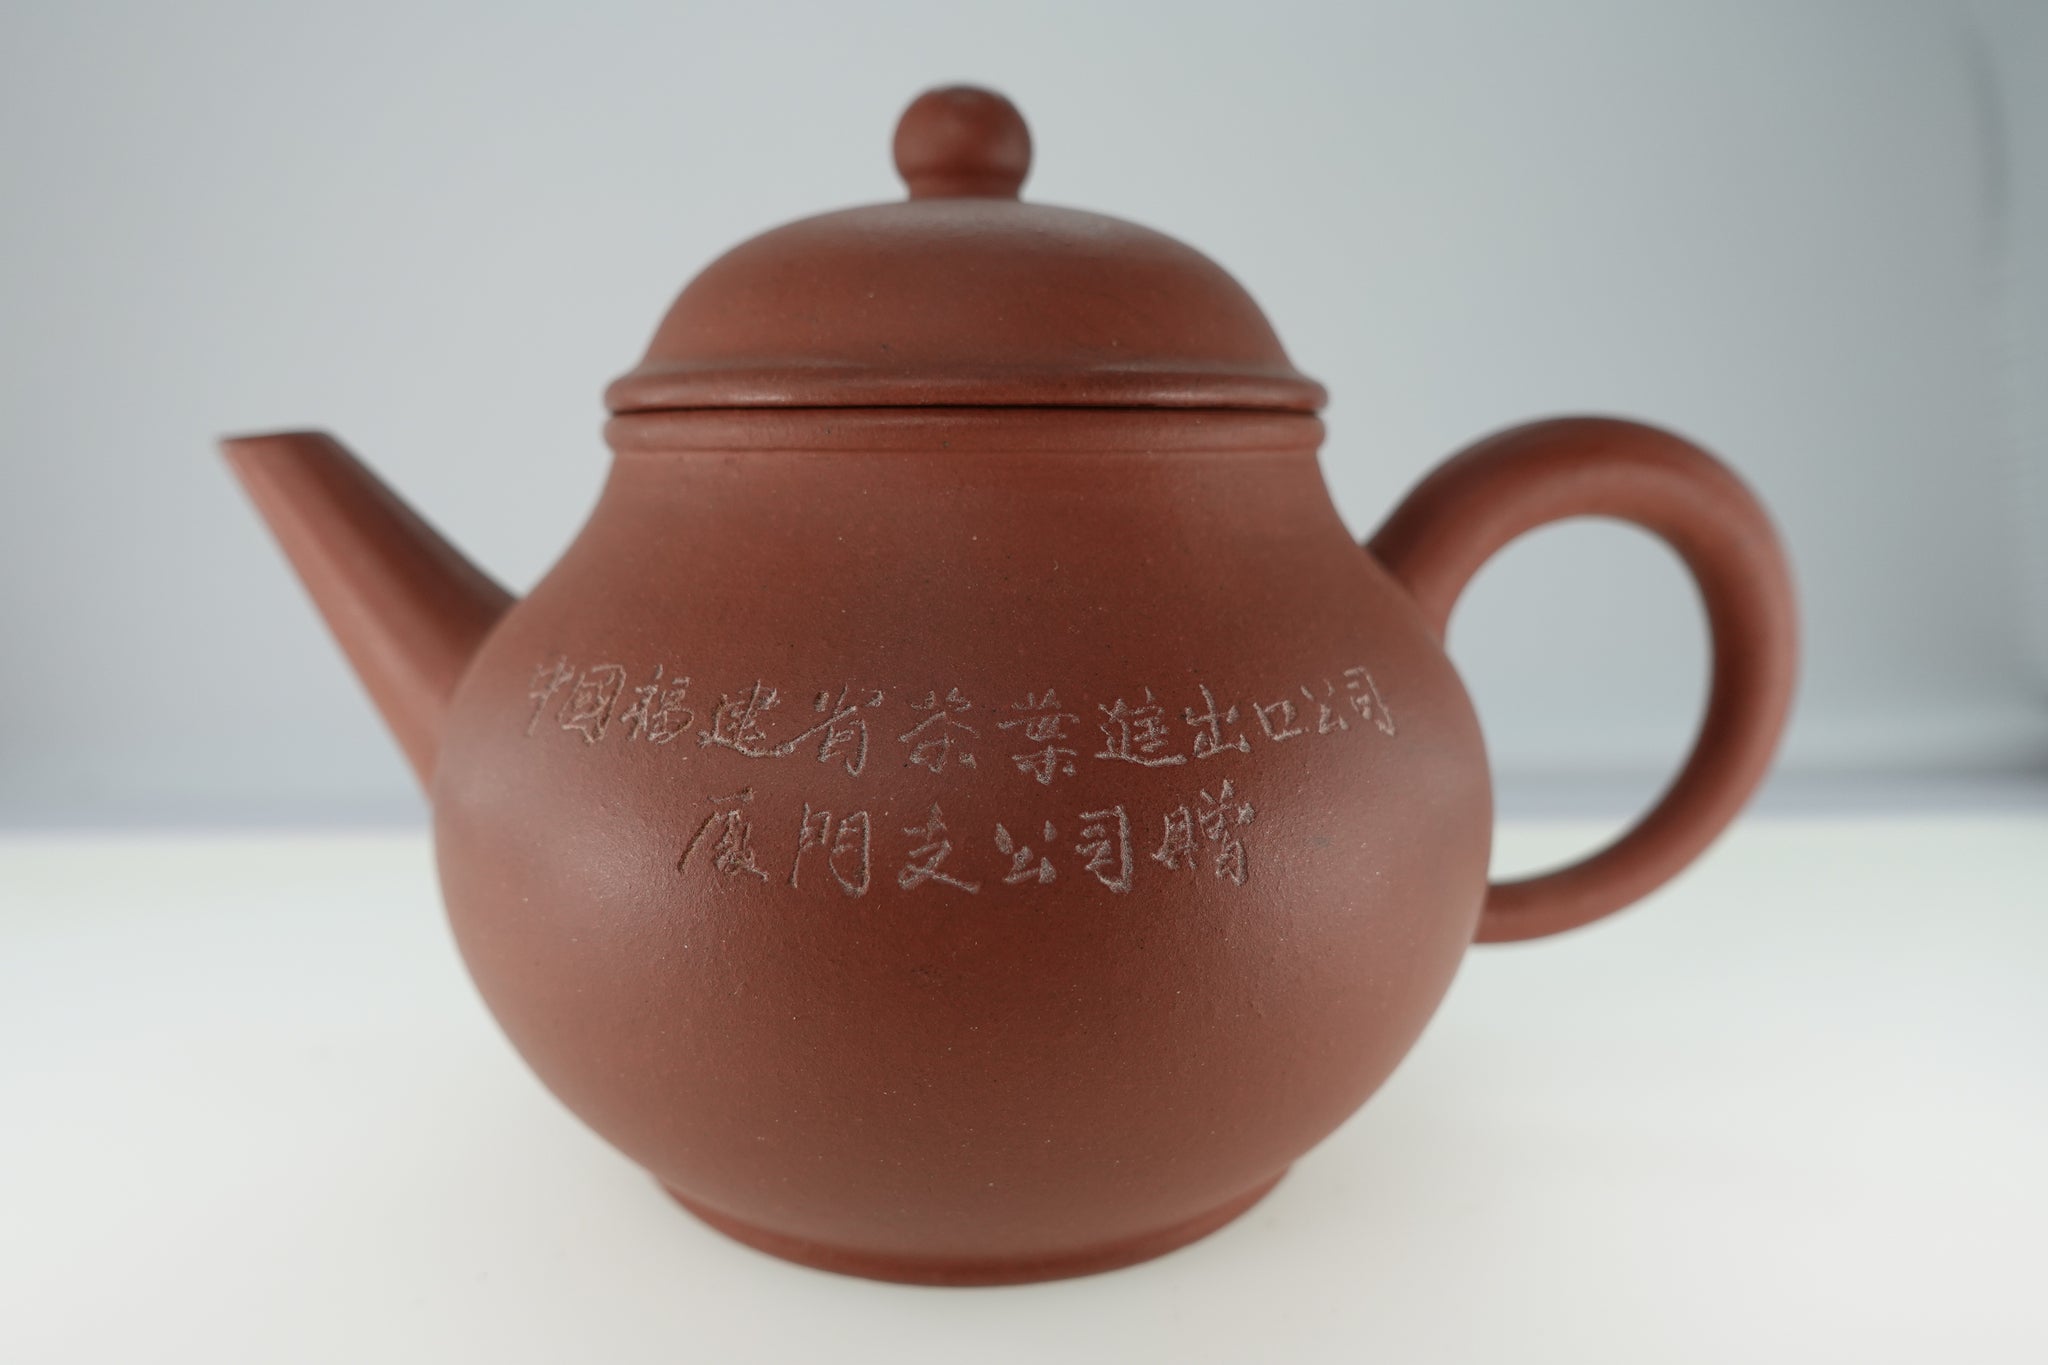 80年代百樂壺中國福建省茶葉進出口公司廈門支公司贈紫砂八杯宜興壺三寶